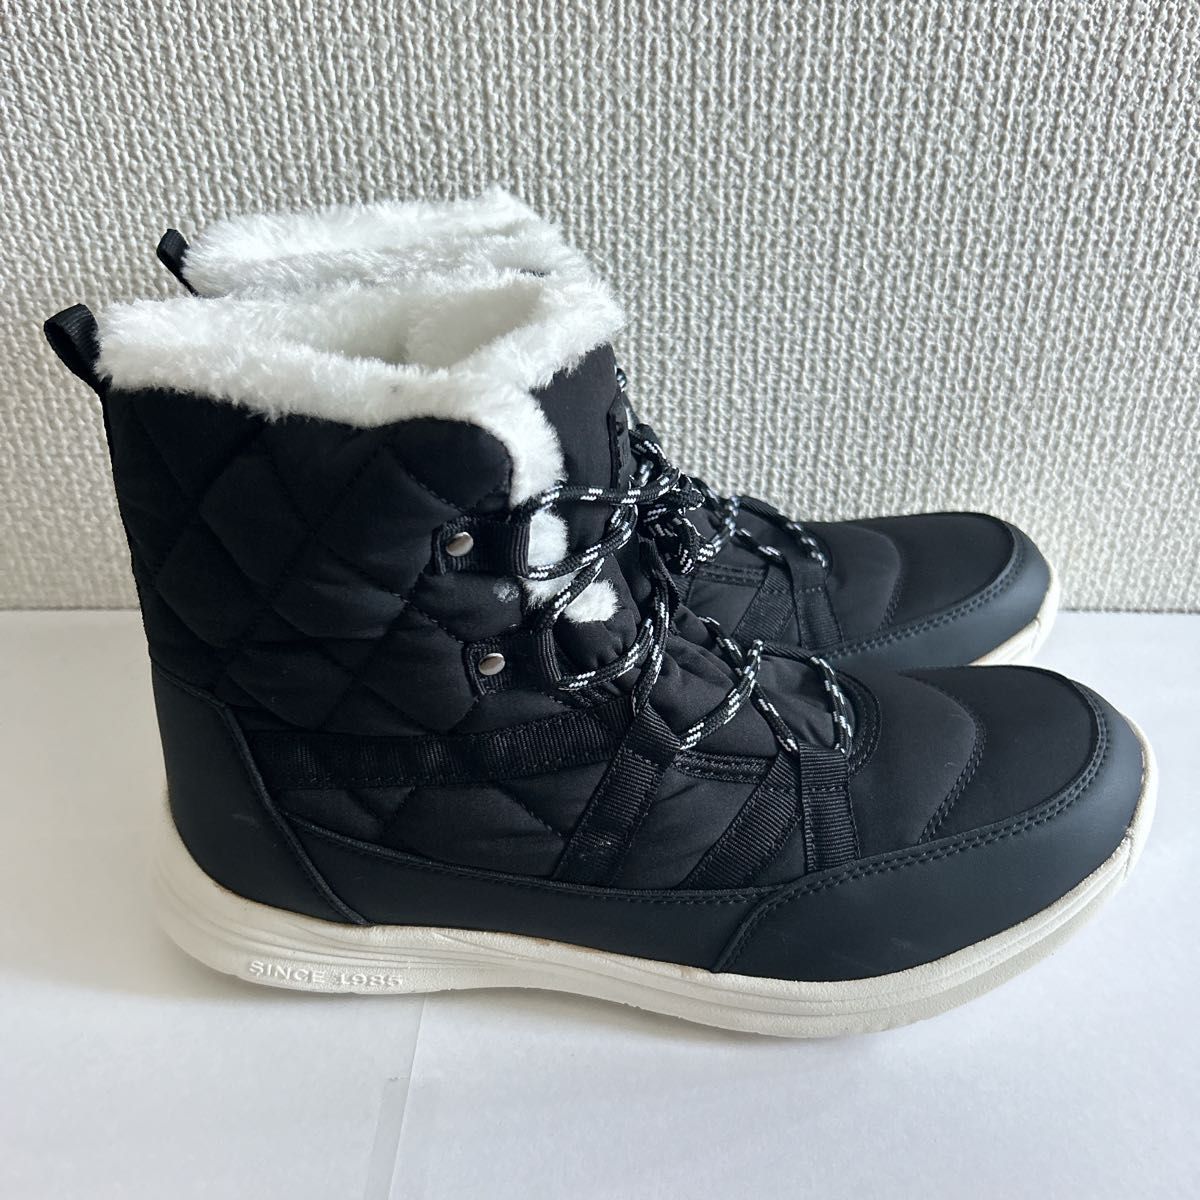 [MORENDL] スノーブーツ 防水 防滑 長靴 防寒 ショートブーツ 軽量 雪用のブーツ 裏起毛 雪靴 冬靴 通勤 